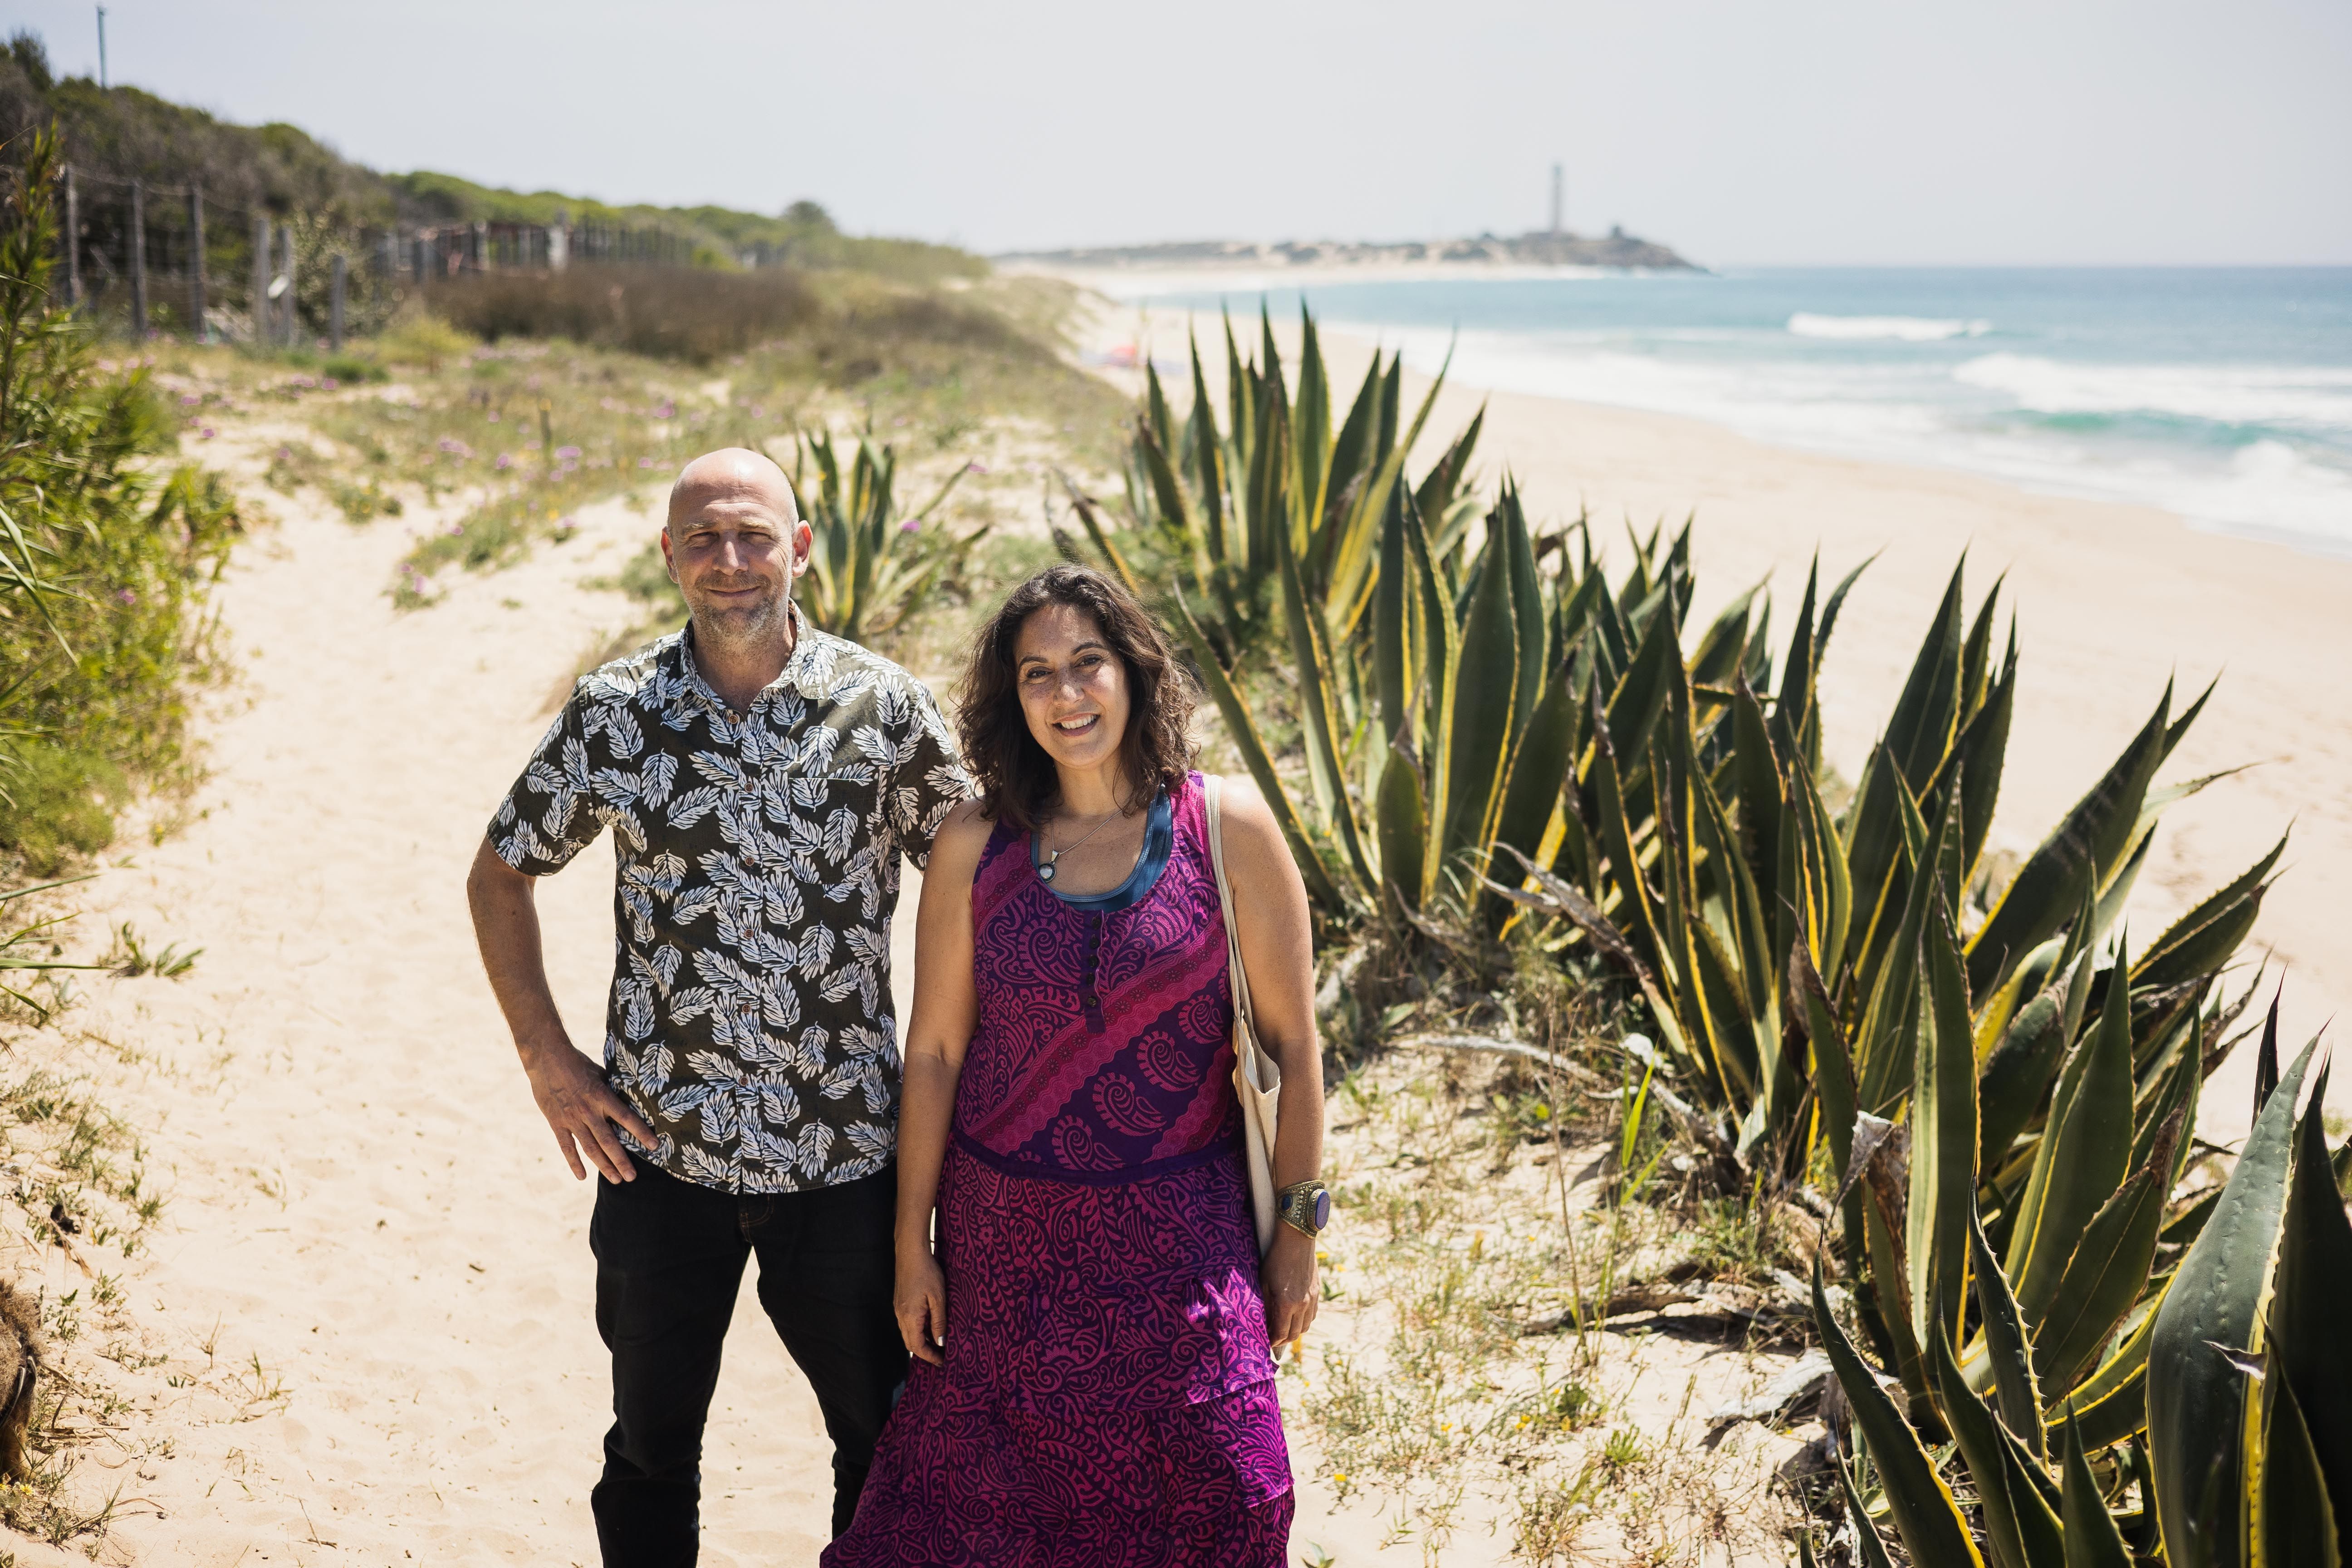 Raquel y Raúl forman parte del grupo Playas Vivas que realiza acciones divulgativas sobre temas medioambientales en la zona de Barbate.